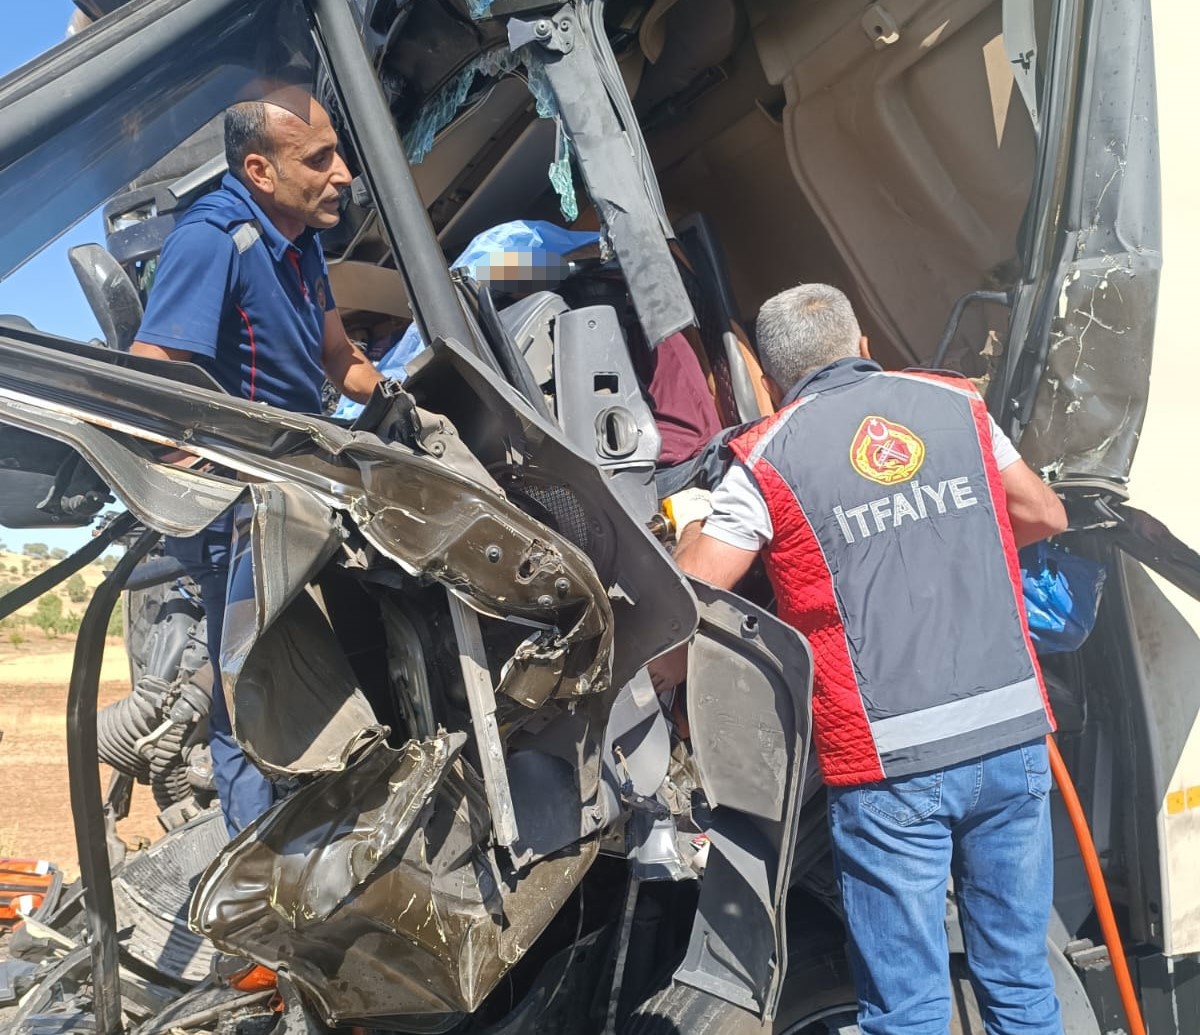 Nakliyat kamyonu hafriyat tırına çarptı: 1 ölü, 2 yaralı